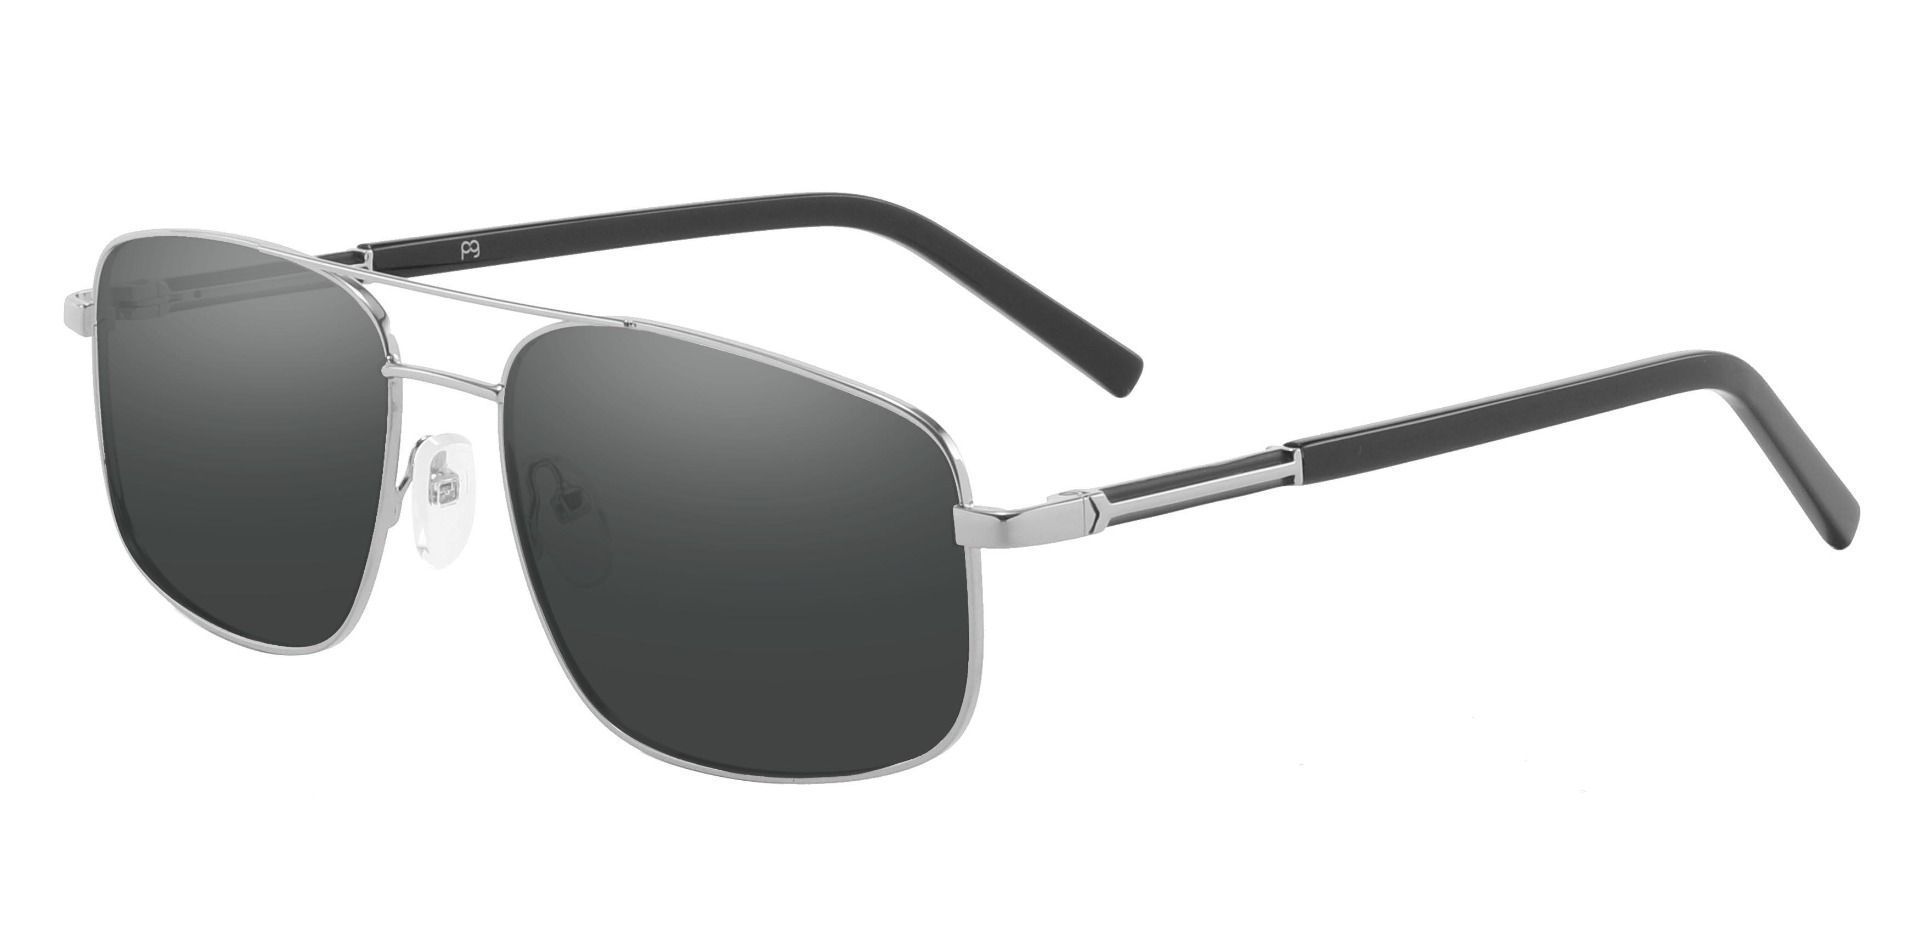 Davenport Aviator Prescription Sunglasses - Silver Frame With Gray Lenses